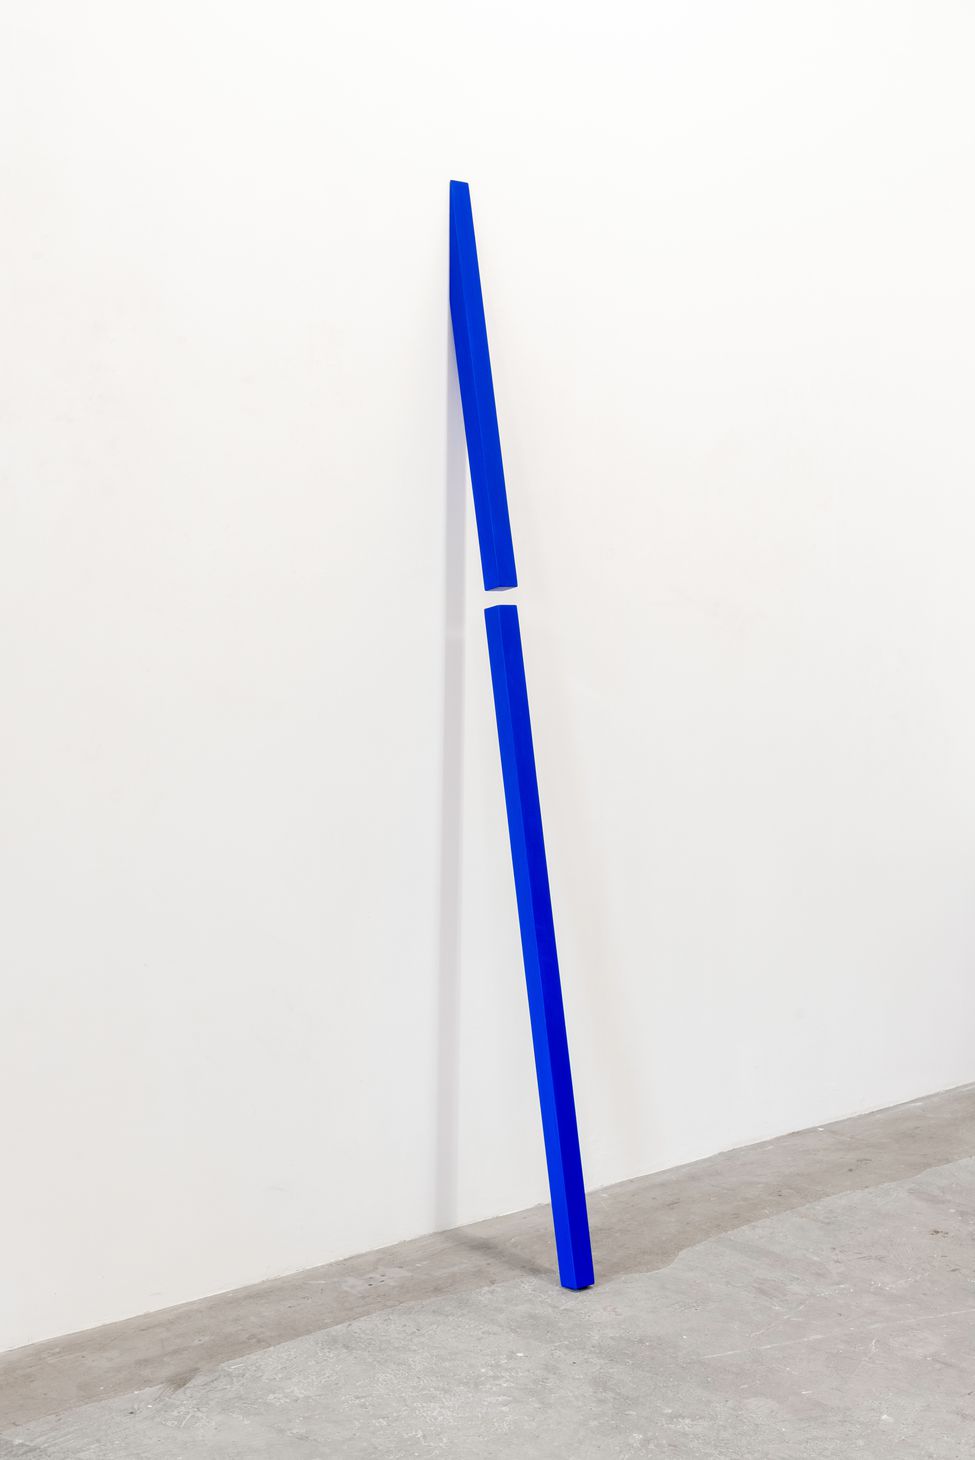 Hans Kooi, kinetic sculpture, untitled